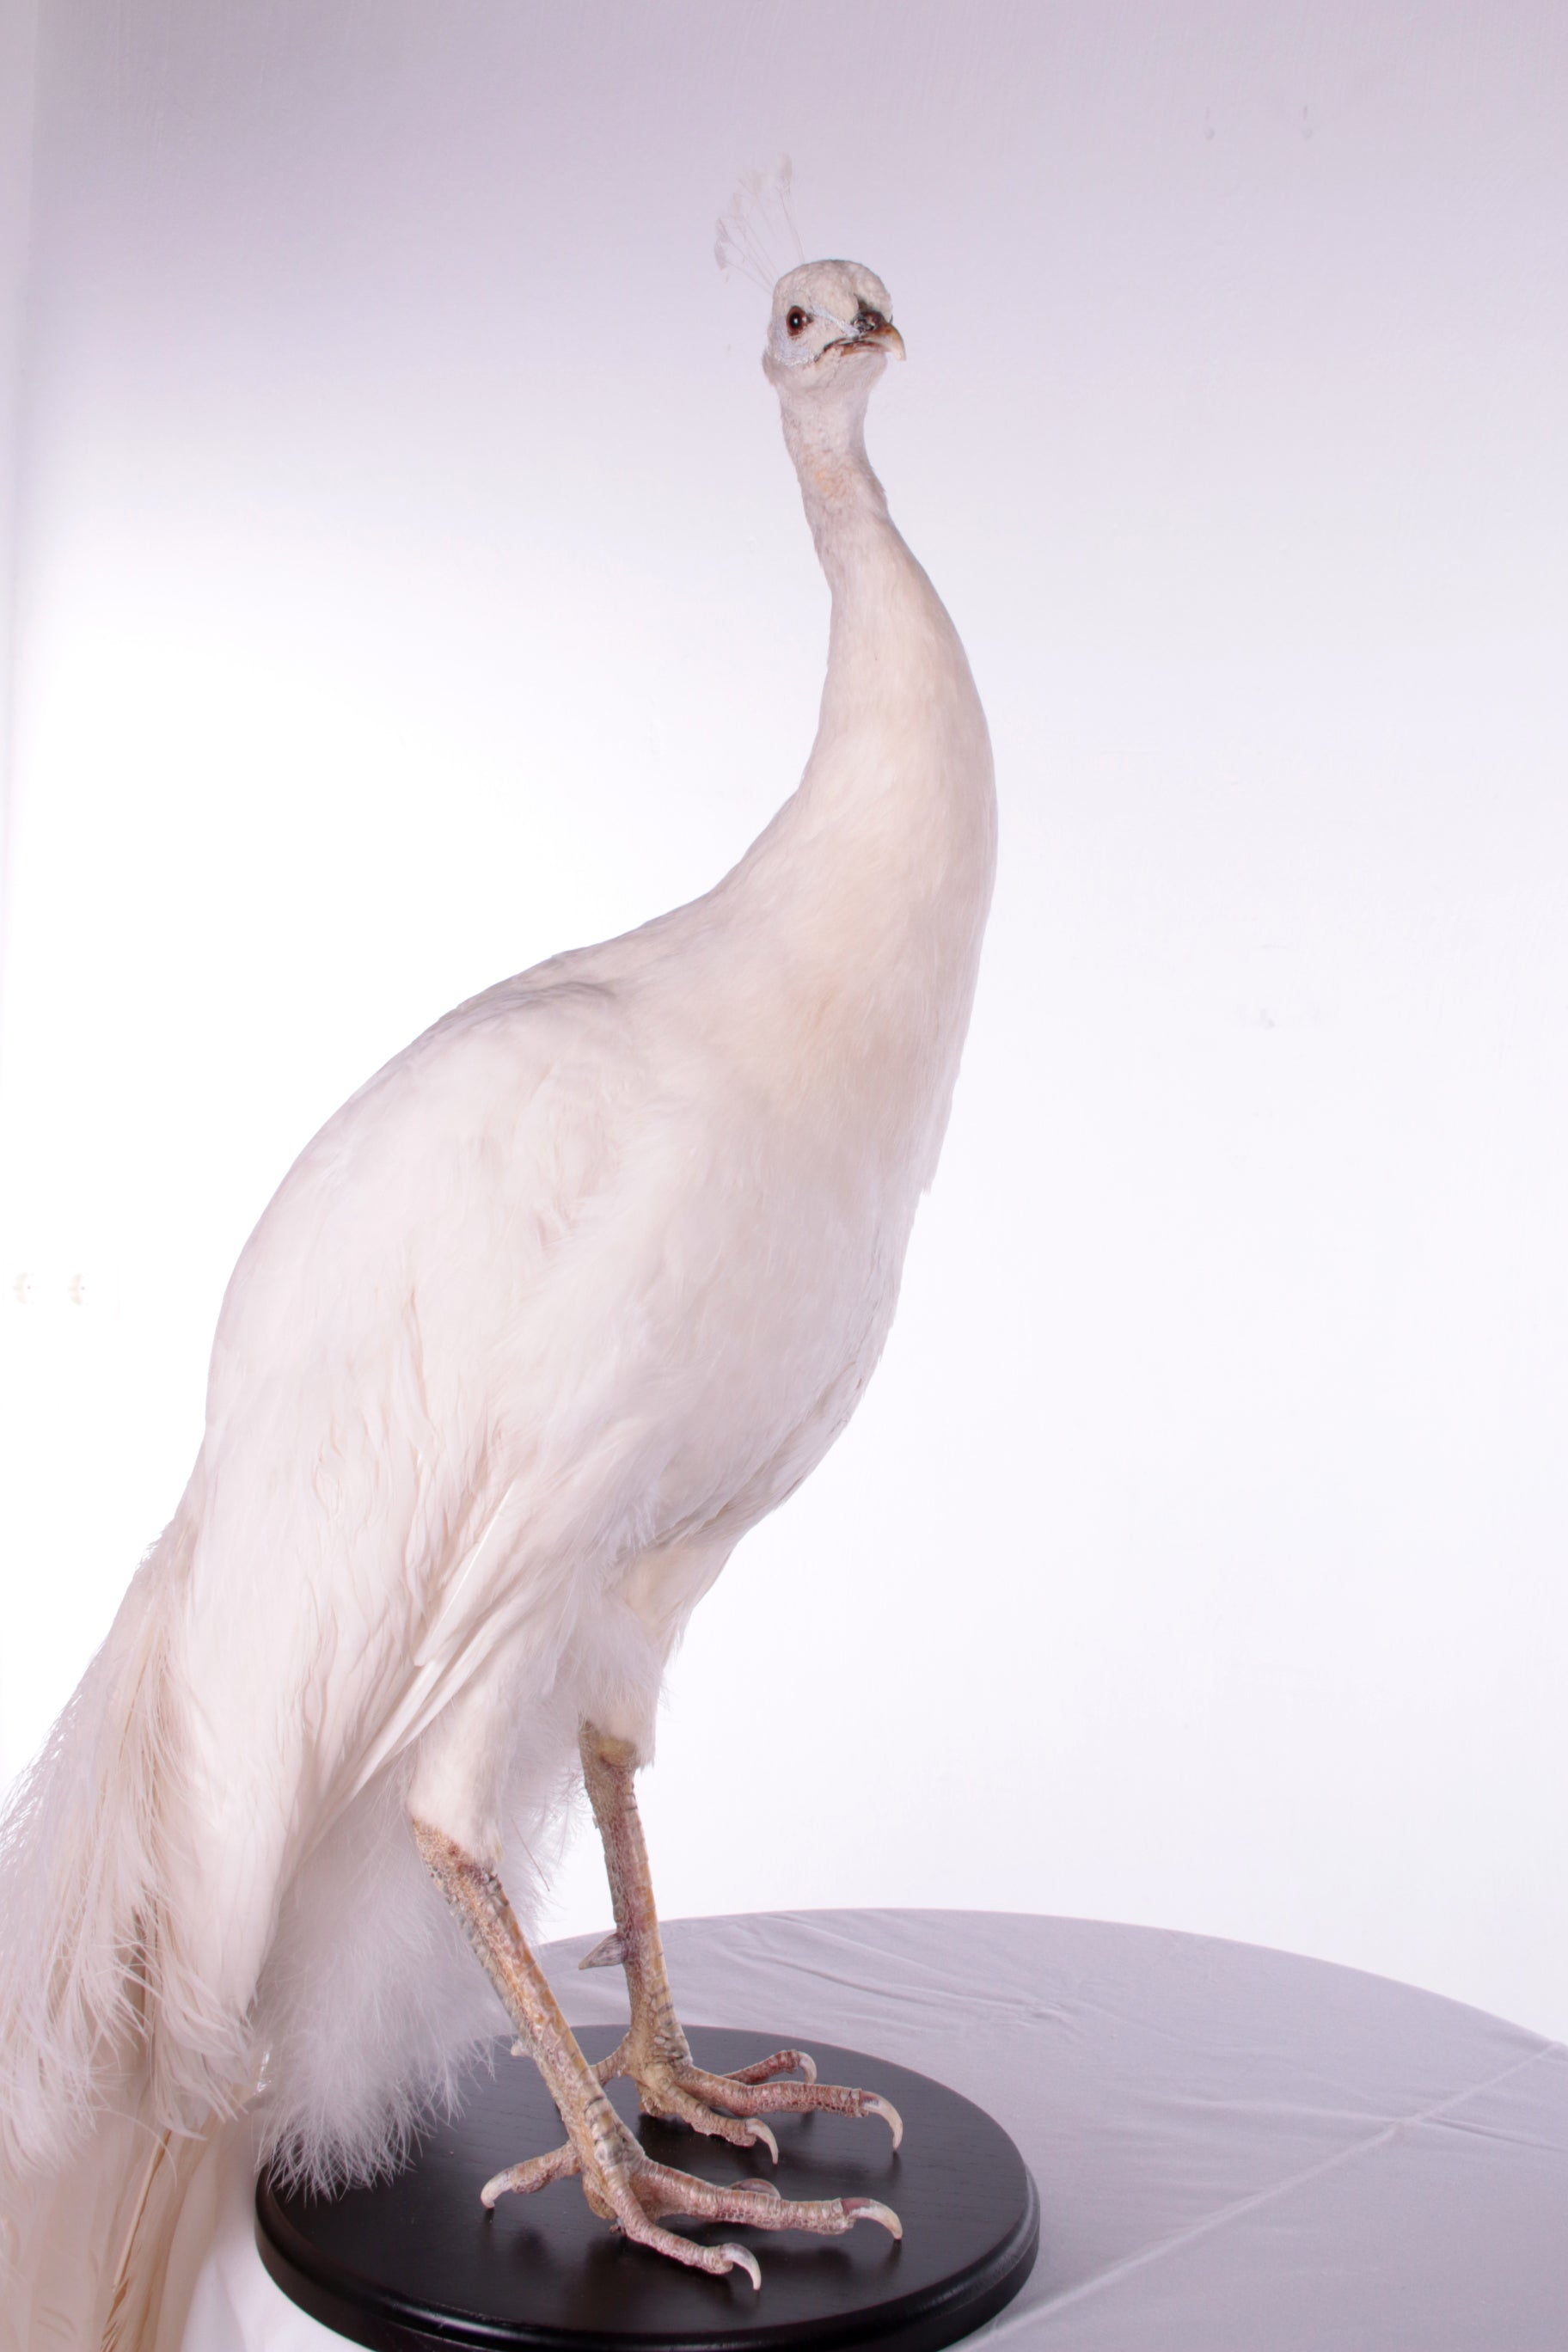 Mooie Sierlijke Opgezette witte pauw lijf zonder staart